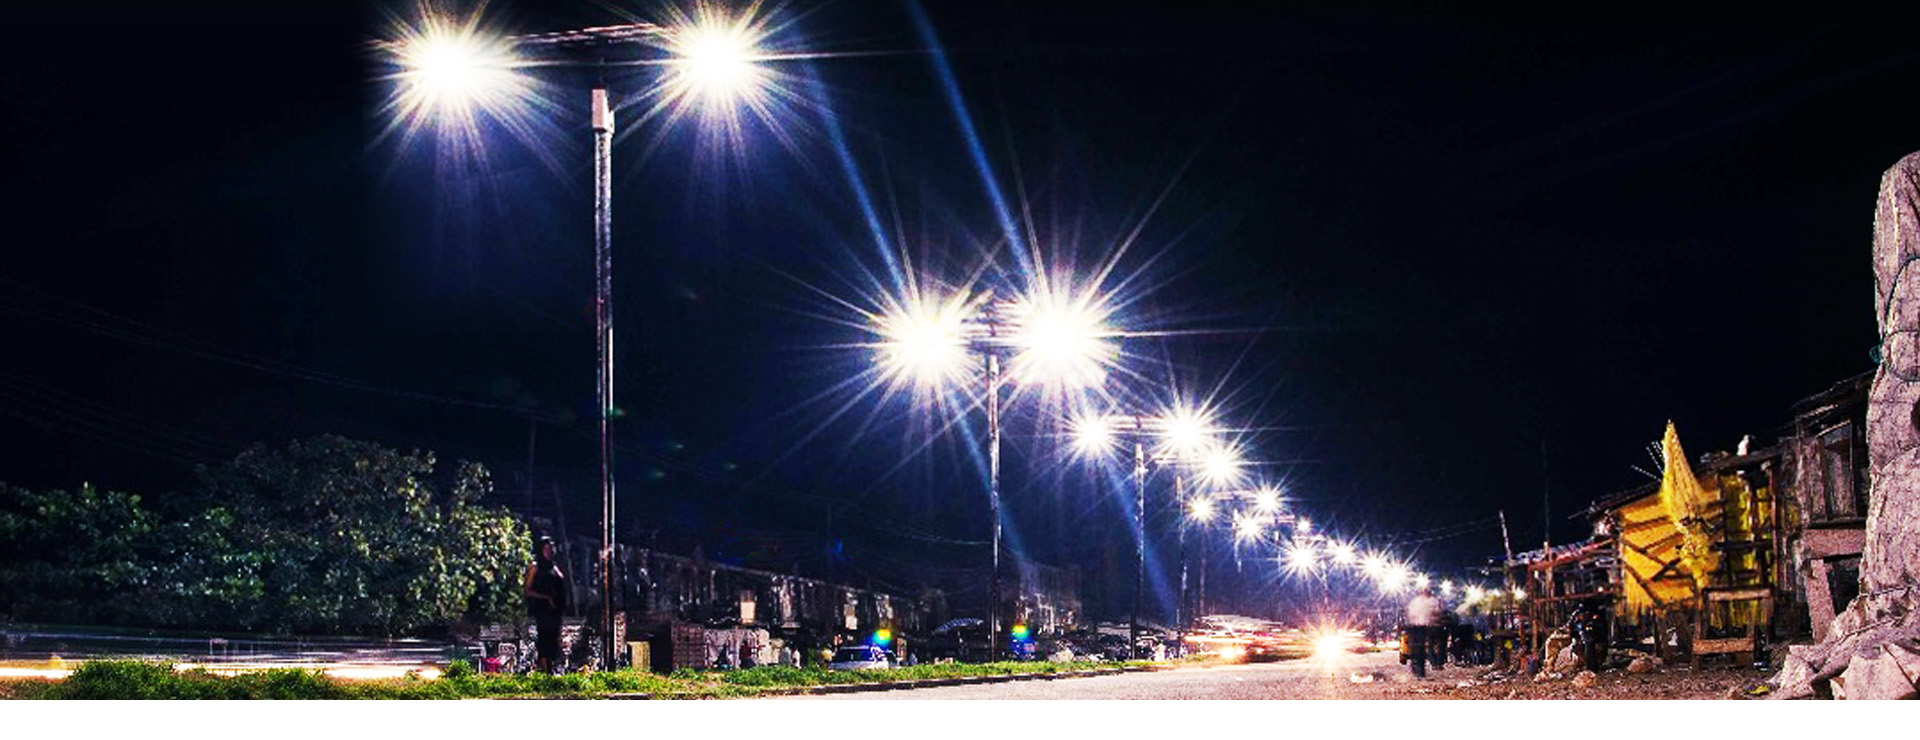 12v dc led street light